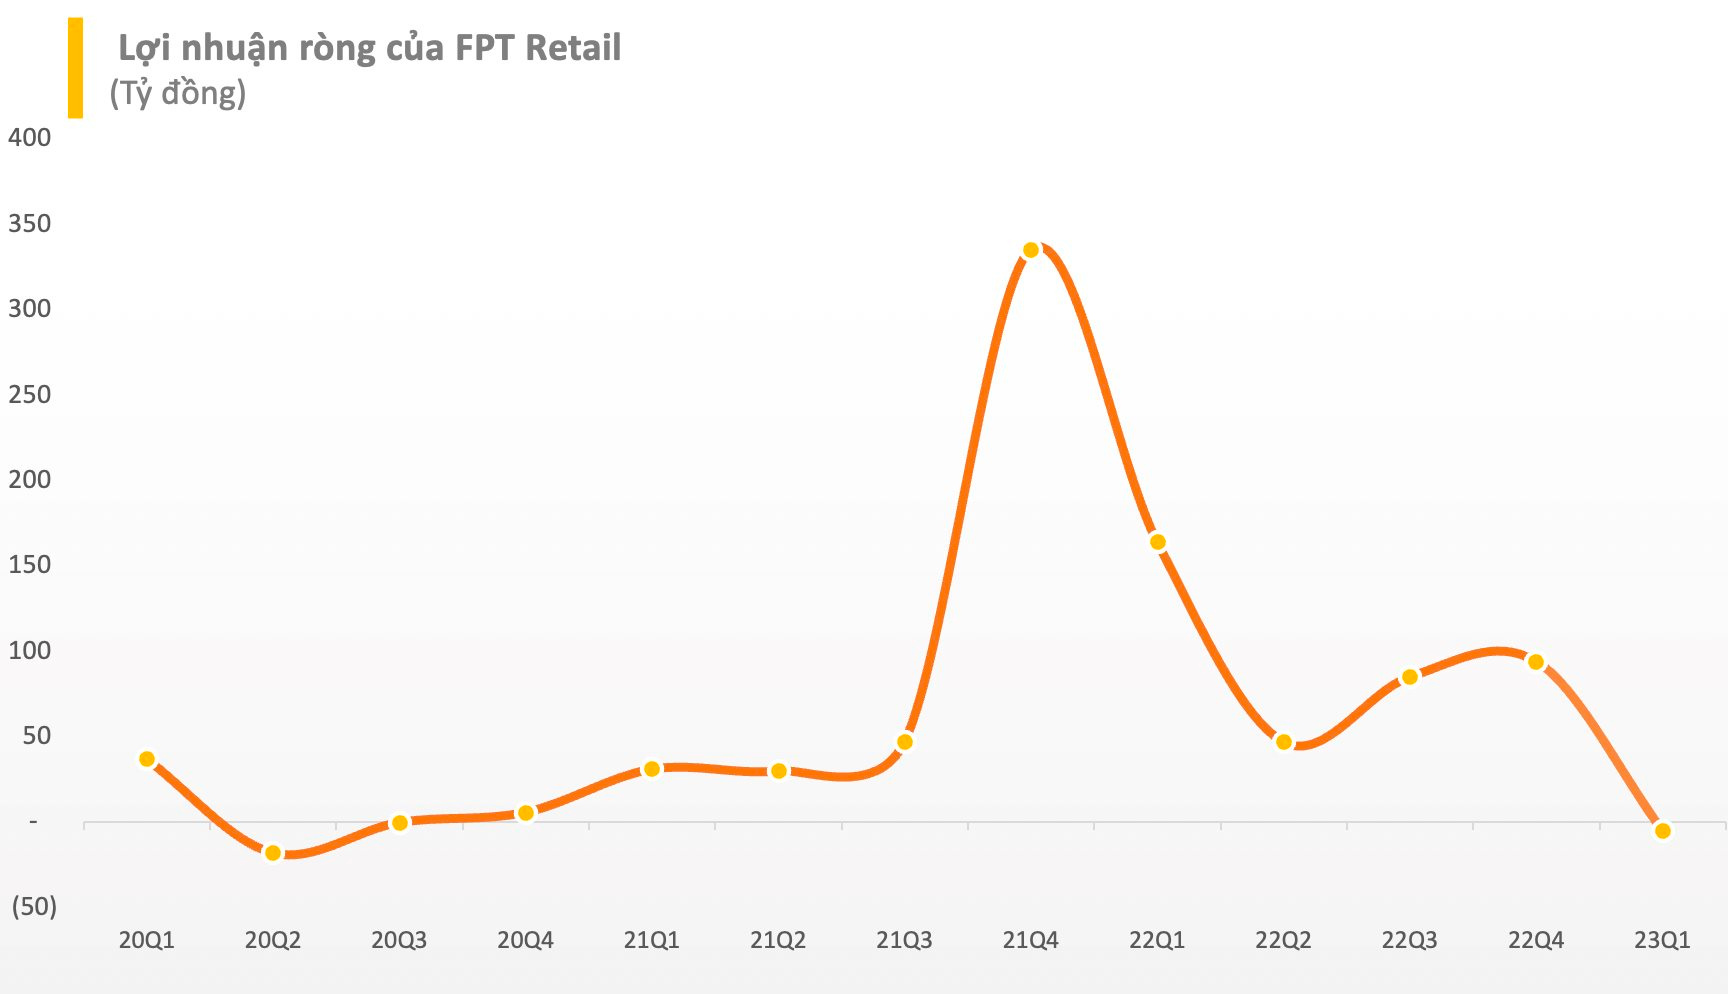 FPT Retail (FRT) lỗ ròng 5 tỷ đồng trong quý 1 bất chấp chuỗi Long Châu tăng trưởng mạnh doanh thu - Ảnh 3.